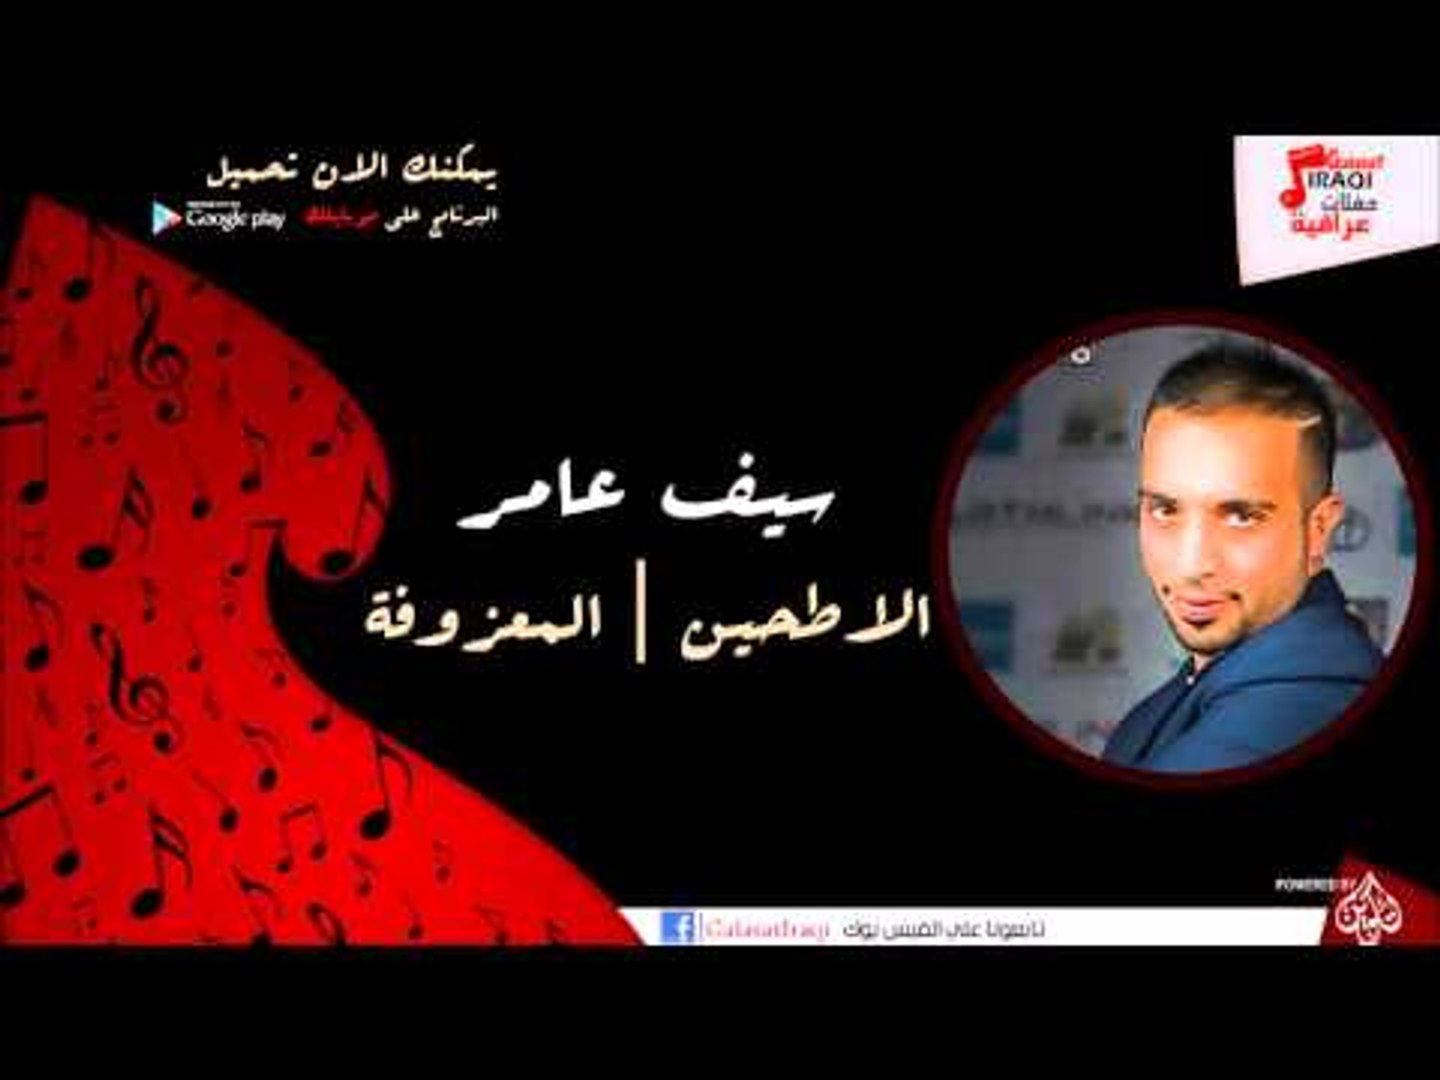 سيف عامر /Saif Amer - الا طحين | المعزوفة | اغاني عراقي - video Dailymotion